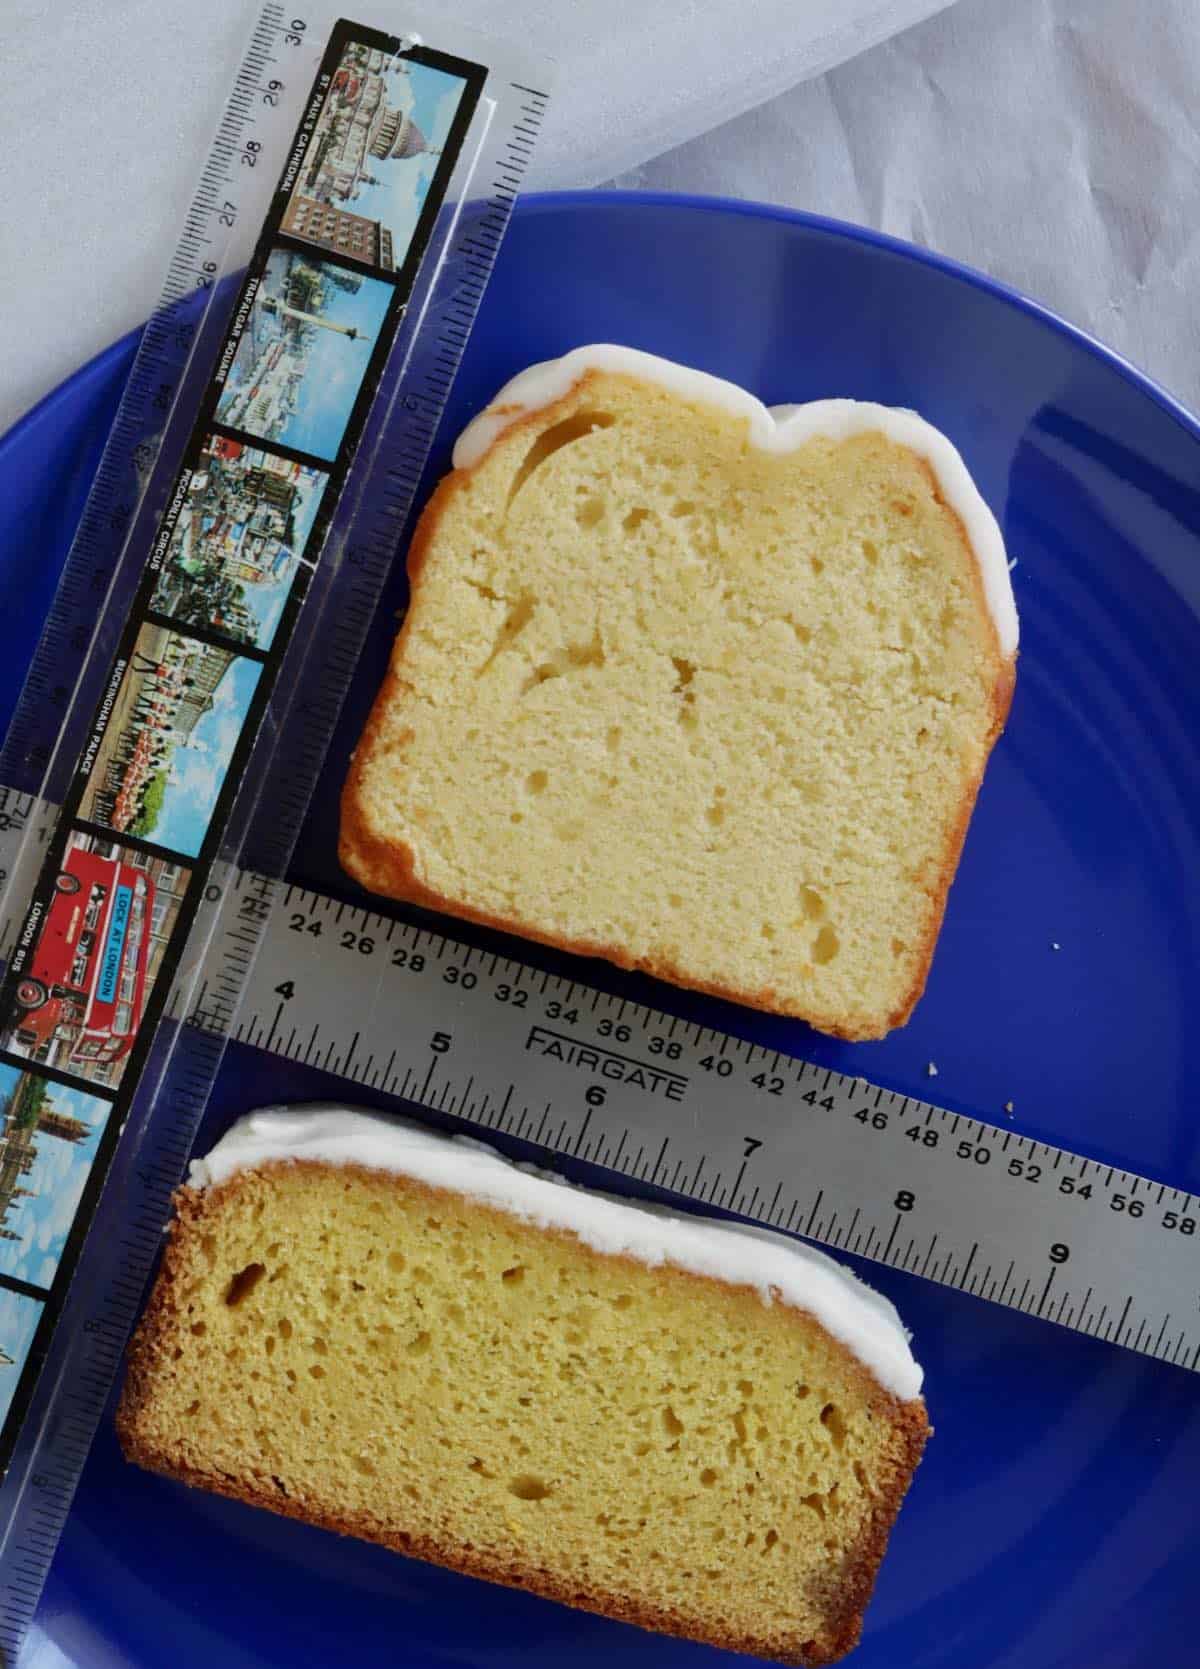 Lemon cake size comparison.